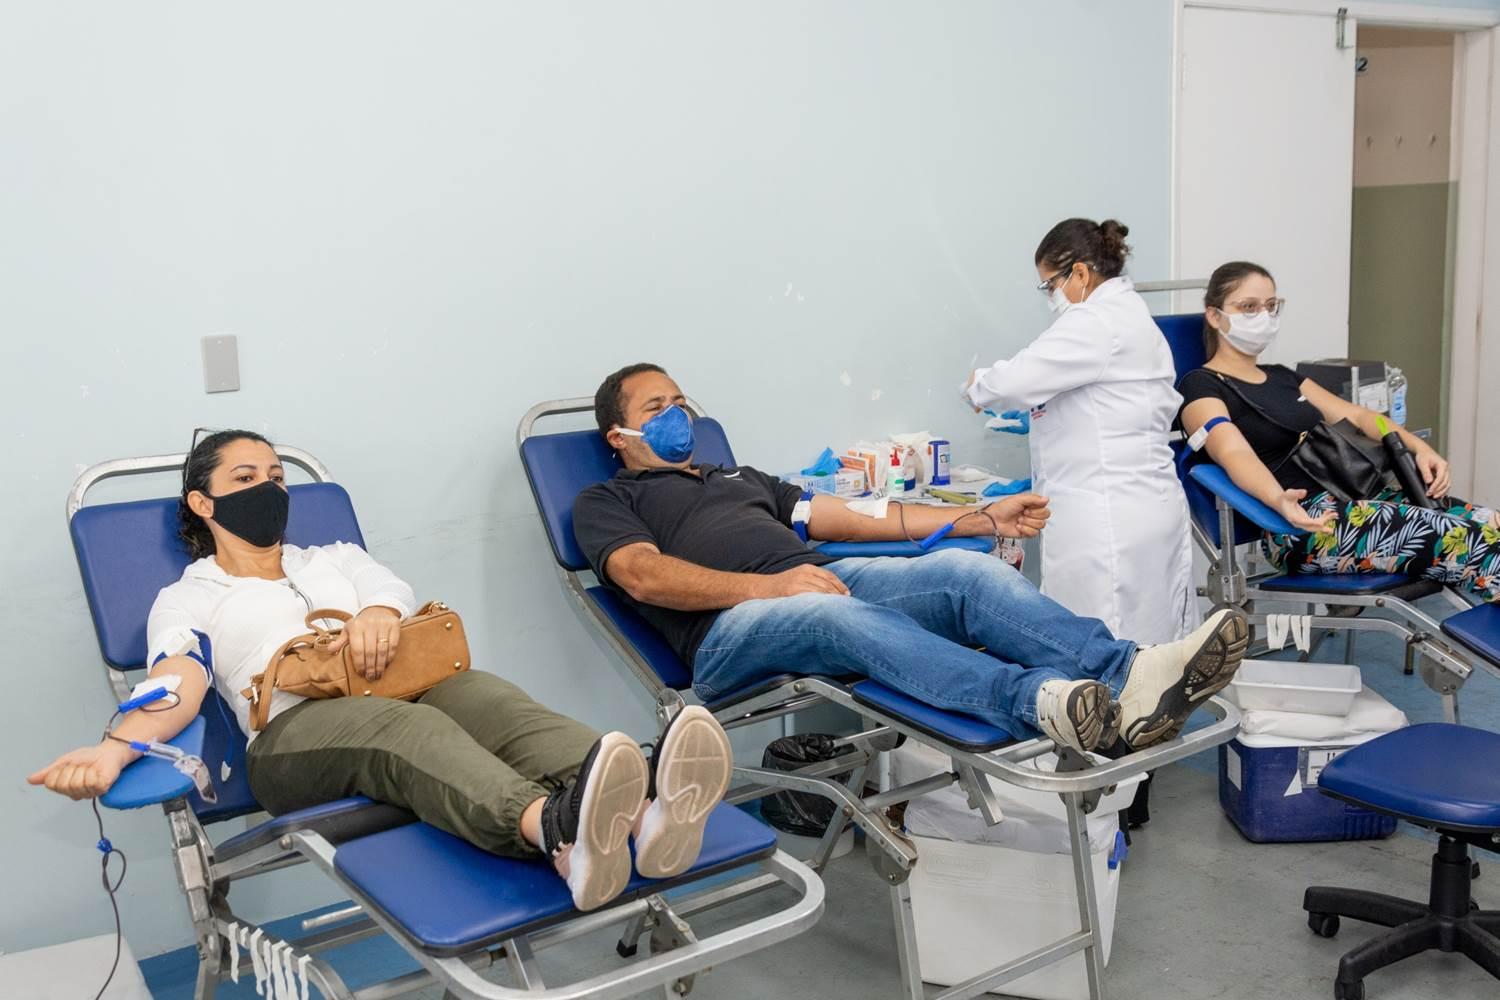 Doação de sangue: coordenador diz que itatibenses estão comparecendo apesar da pandemia